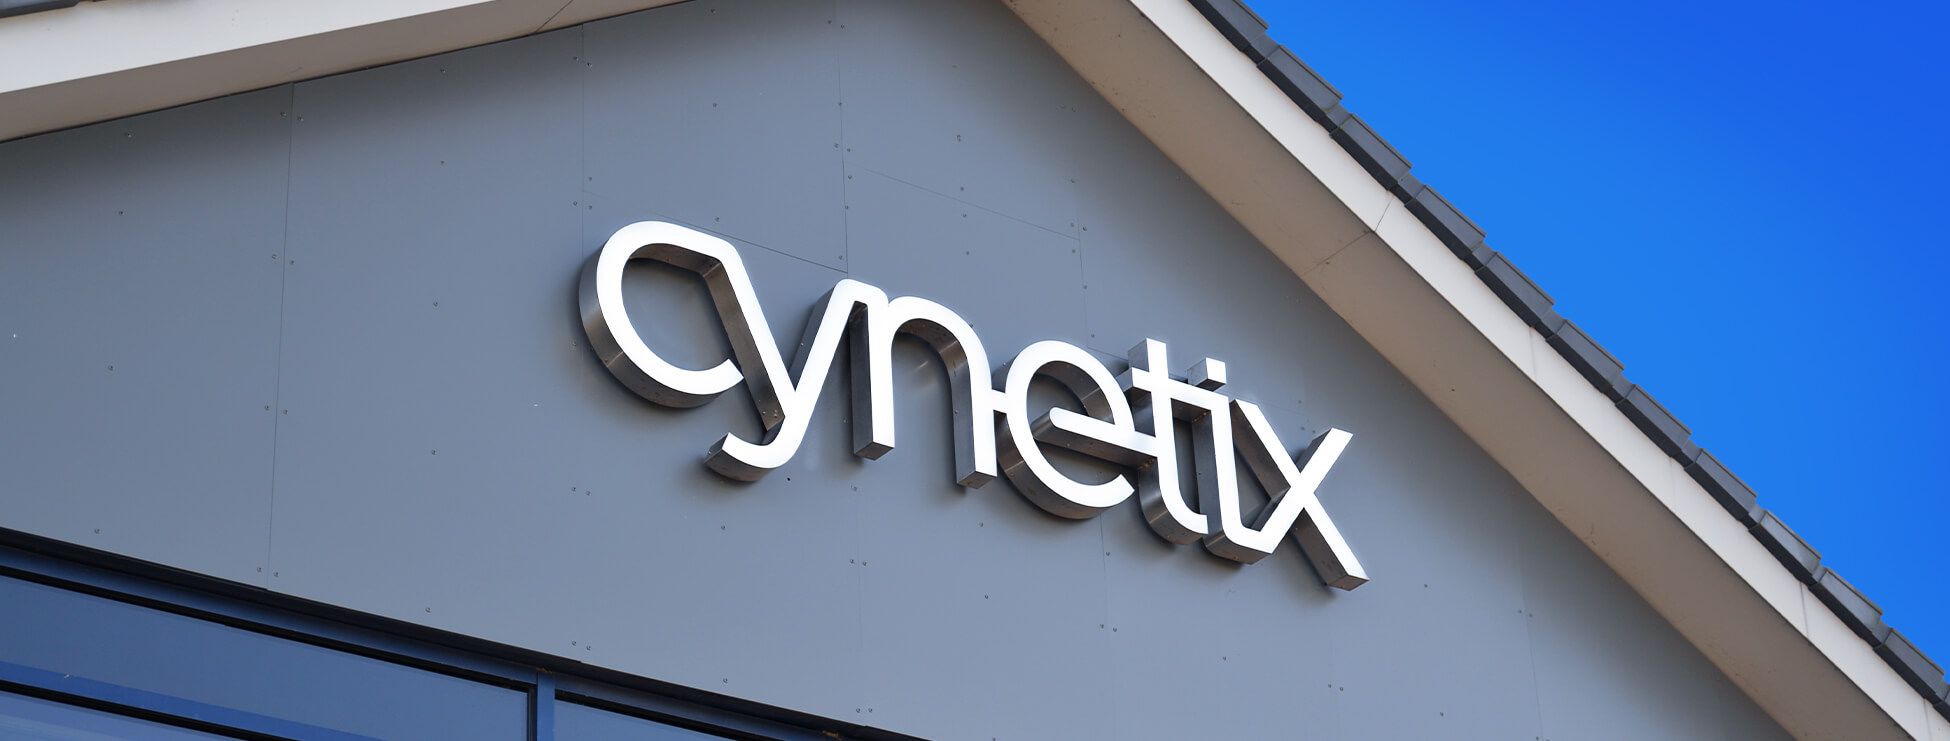 Cynetix - Based in Barlborough, Derbyshire